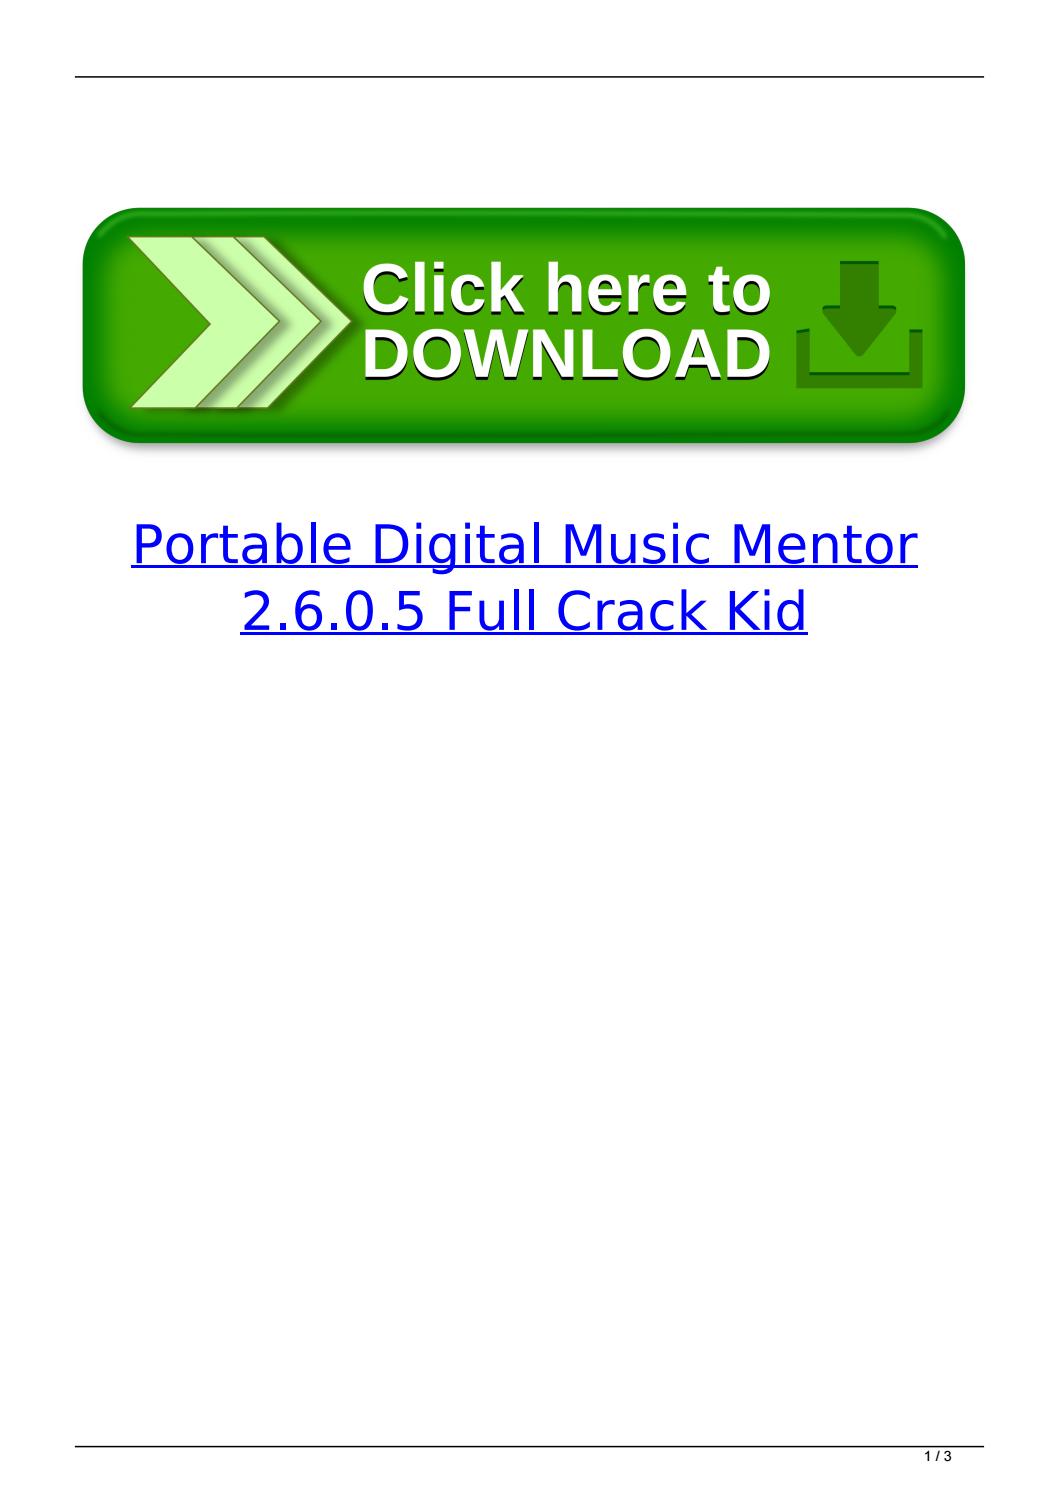 Digital music mentor full version crack version